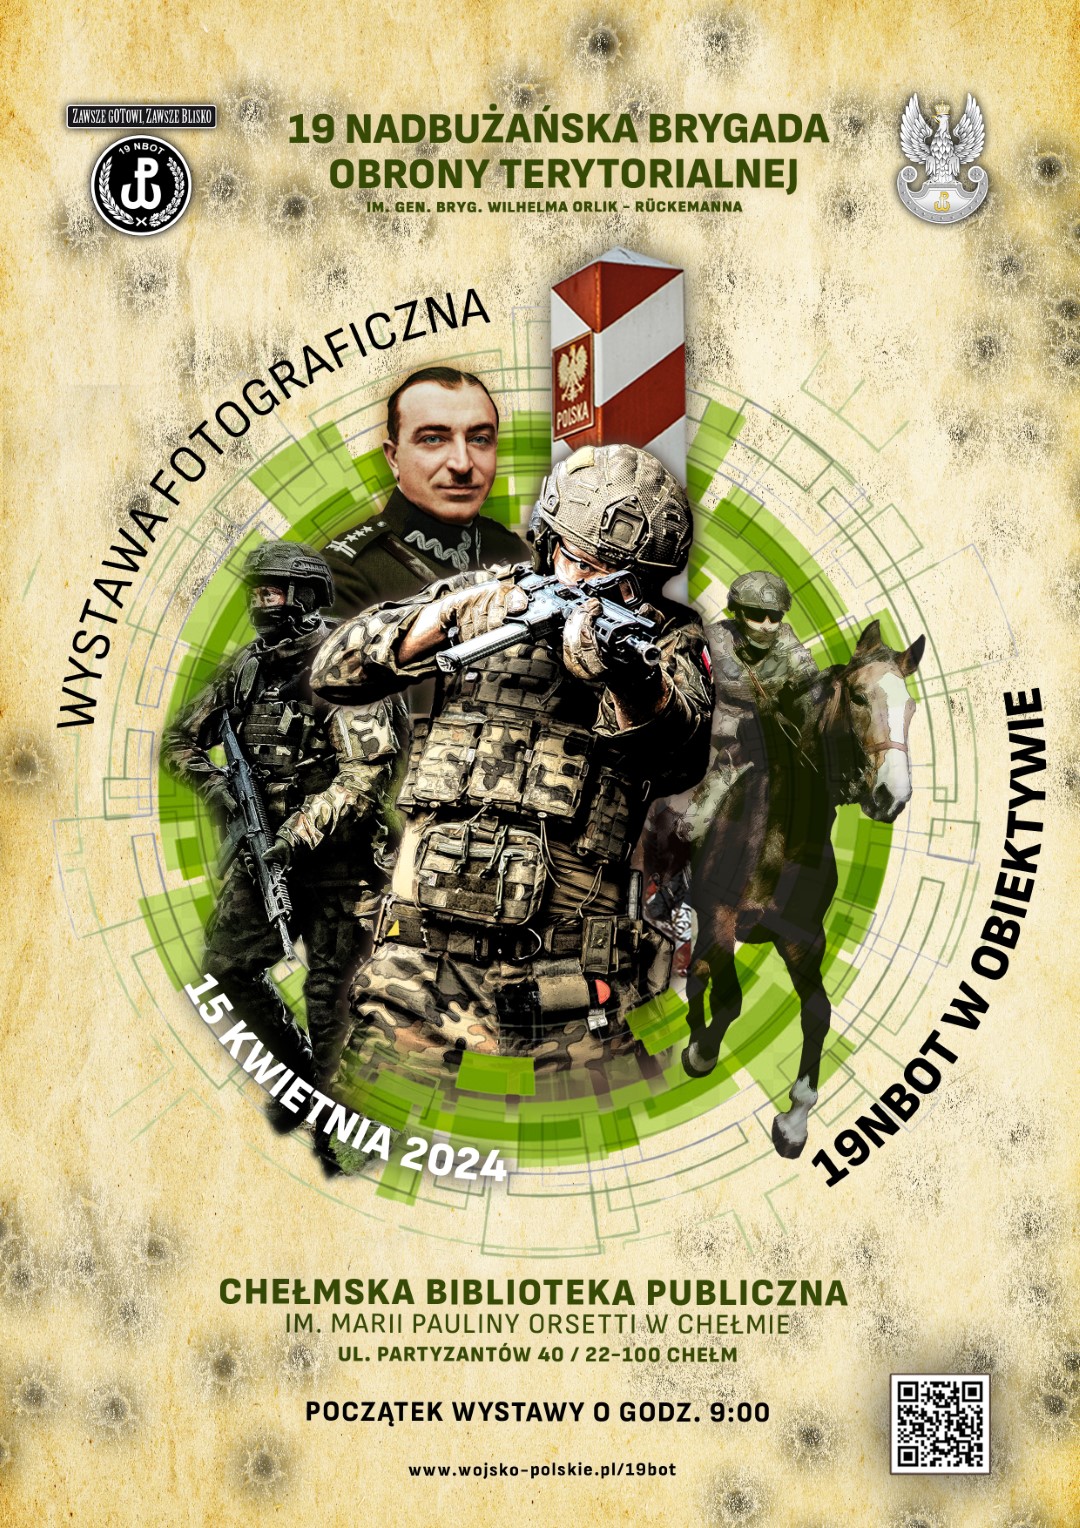 Plakat promujący wystawę fotograficzną 19. Nadbużańskiej Brygady Obrony Terytorialnej